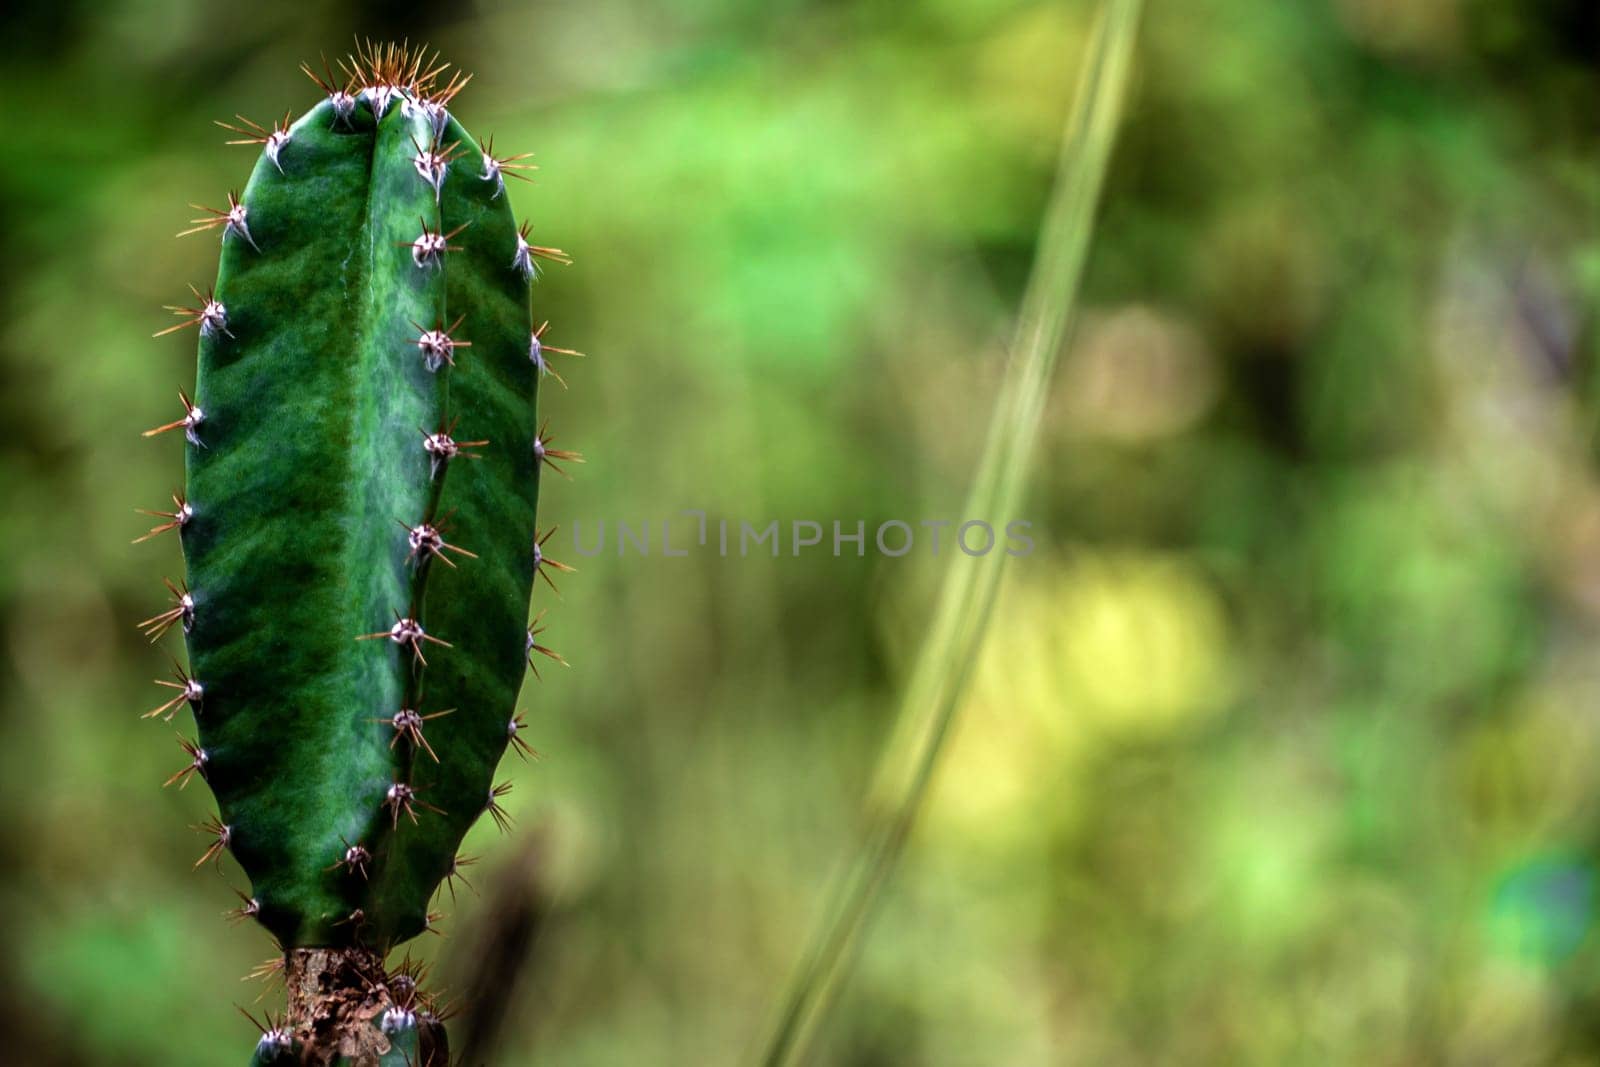 The plump and spiky spines of Cereus Peruvianus cactus